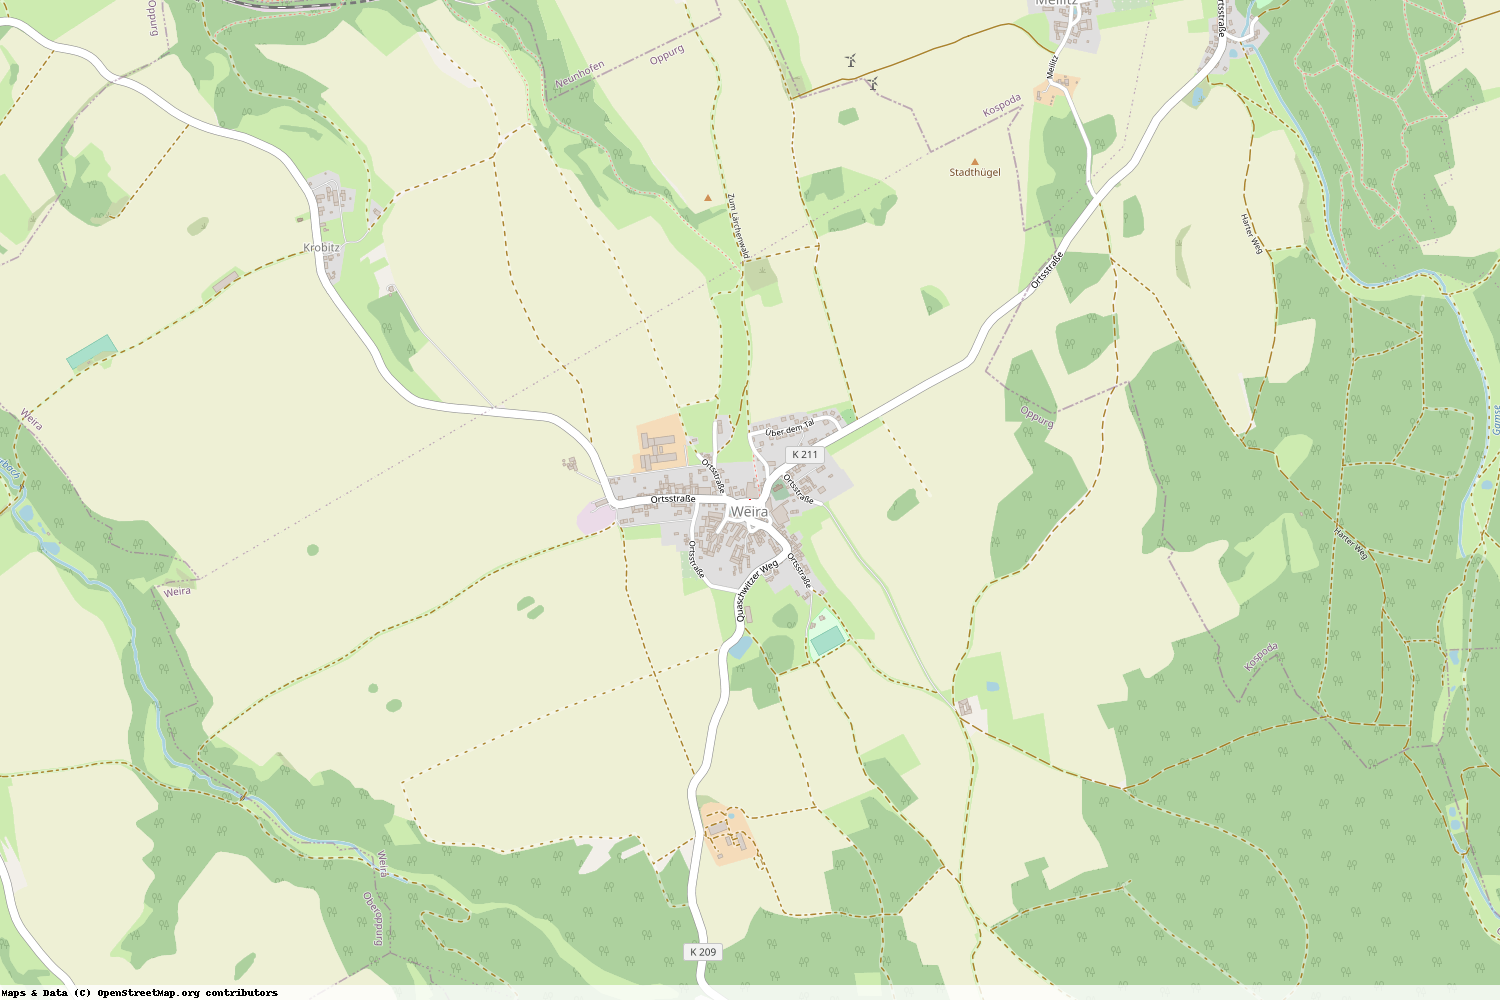 Ist gerade Stromausfall in Thüringen - Saale-Orla-Kreis - Weira?